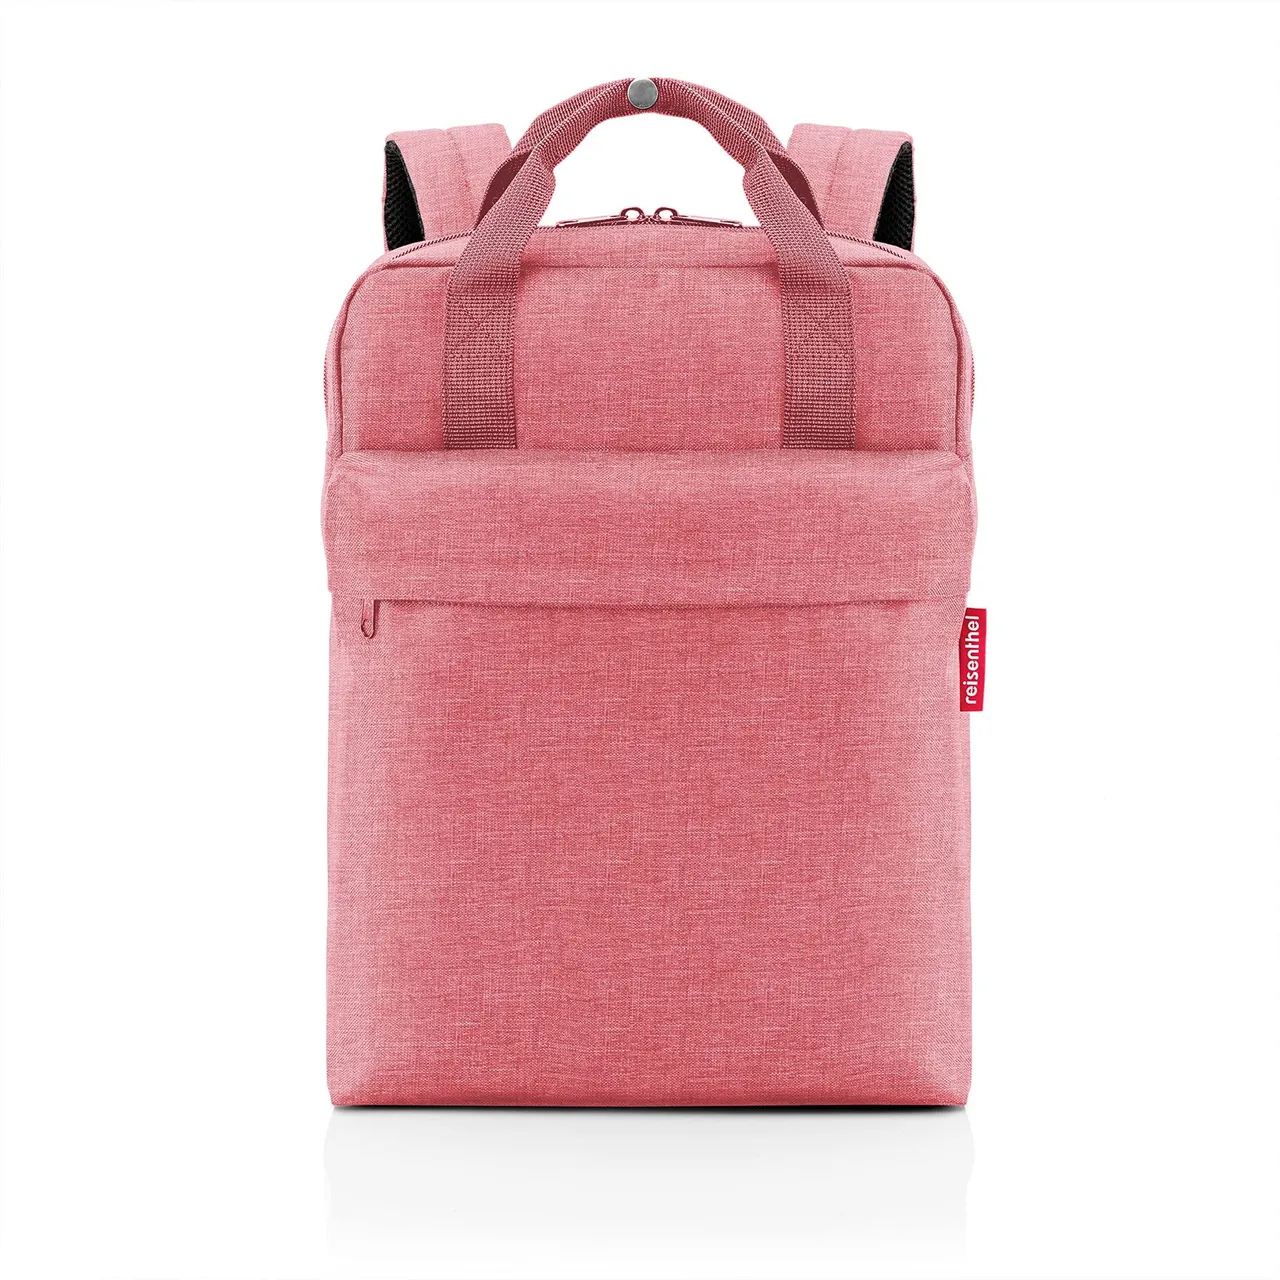 Handtaschen rose Allday Backpack M -